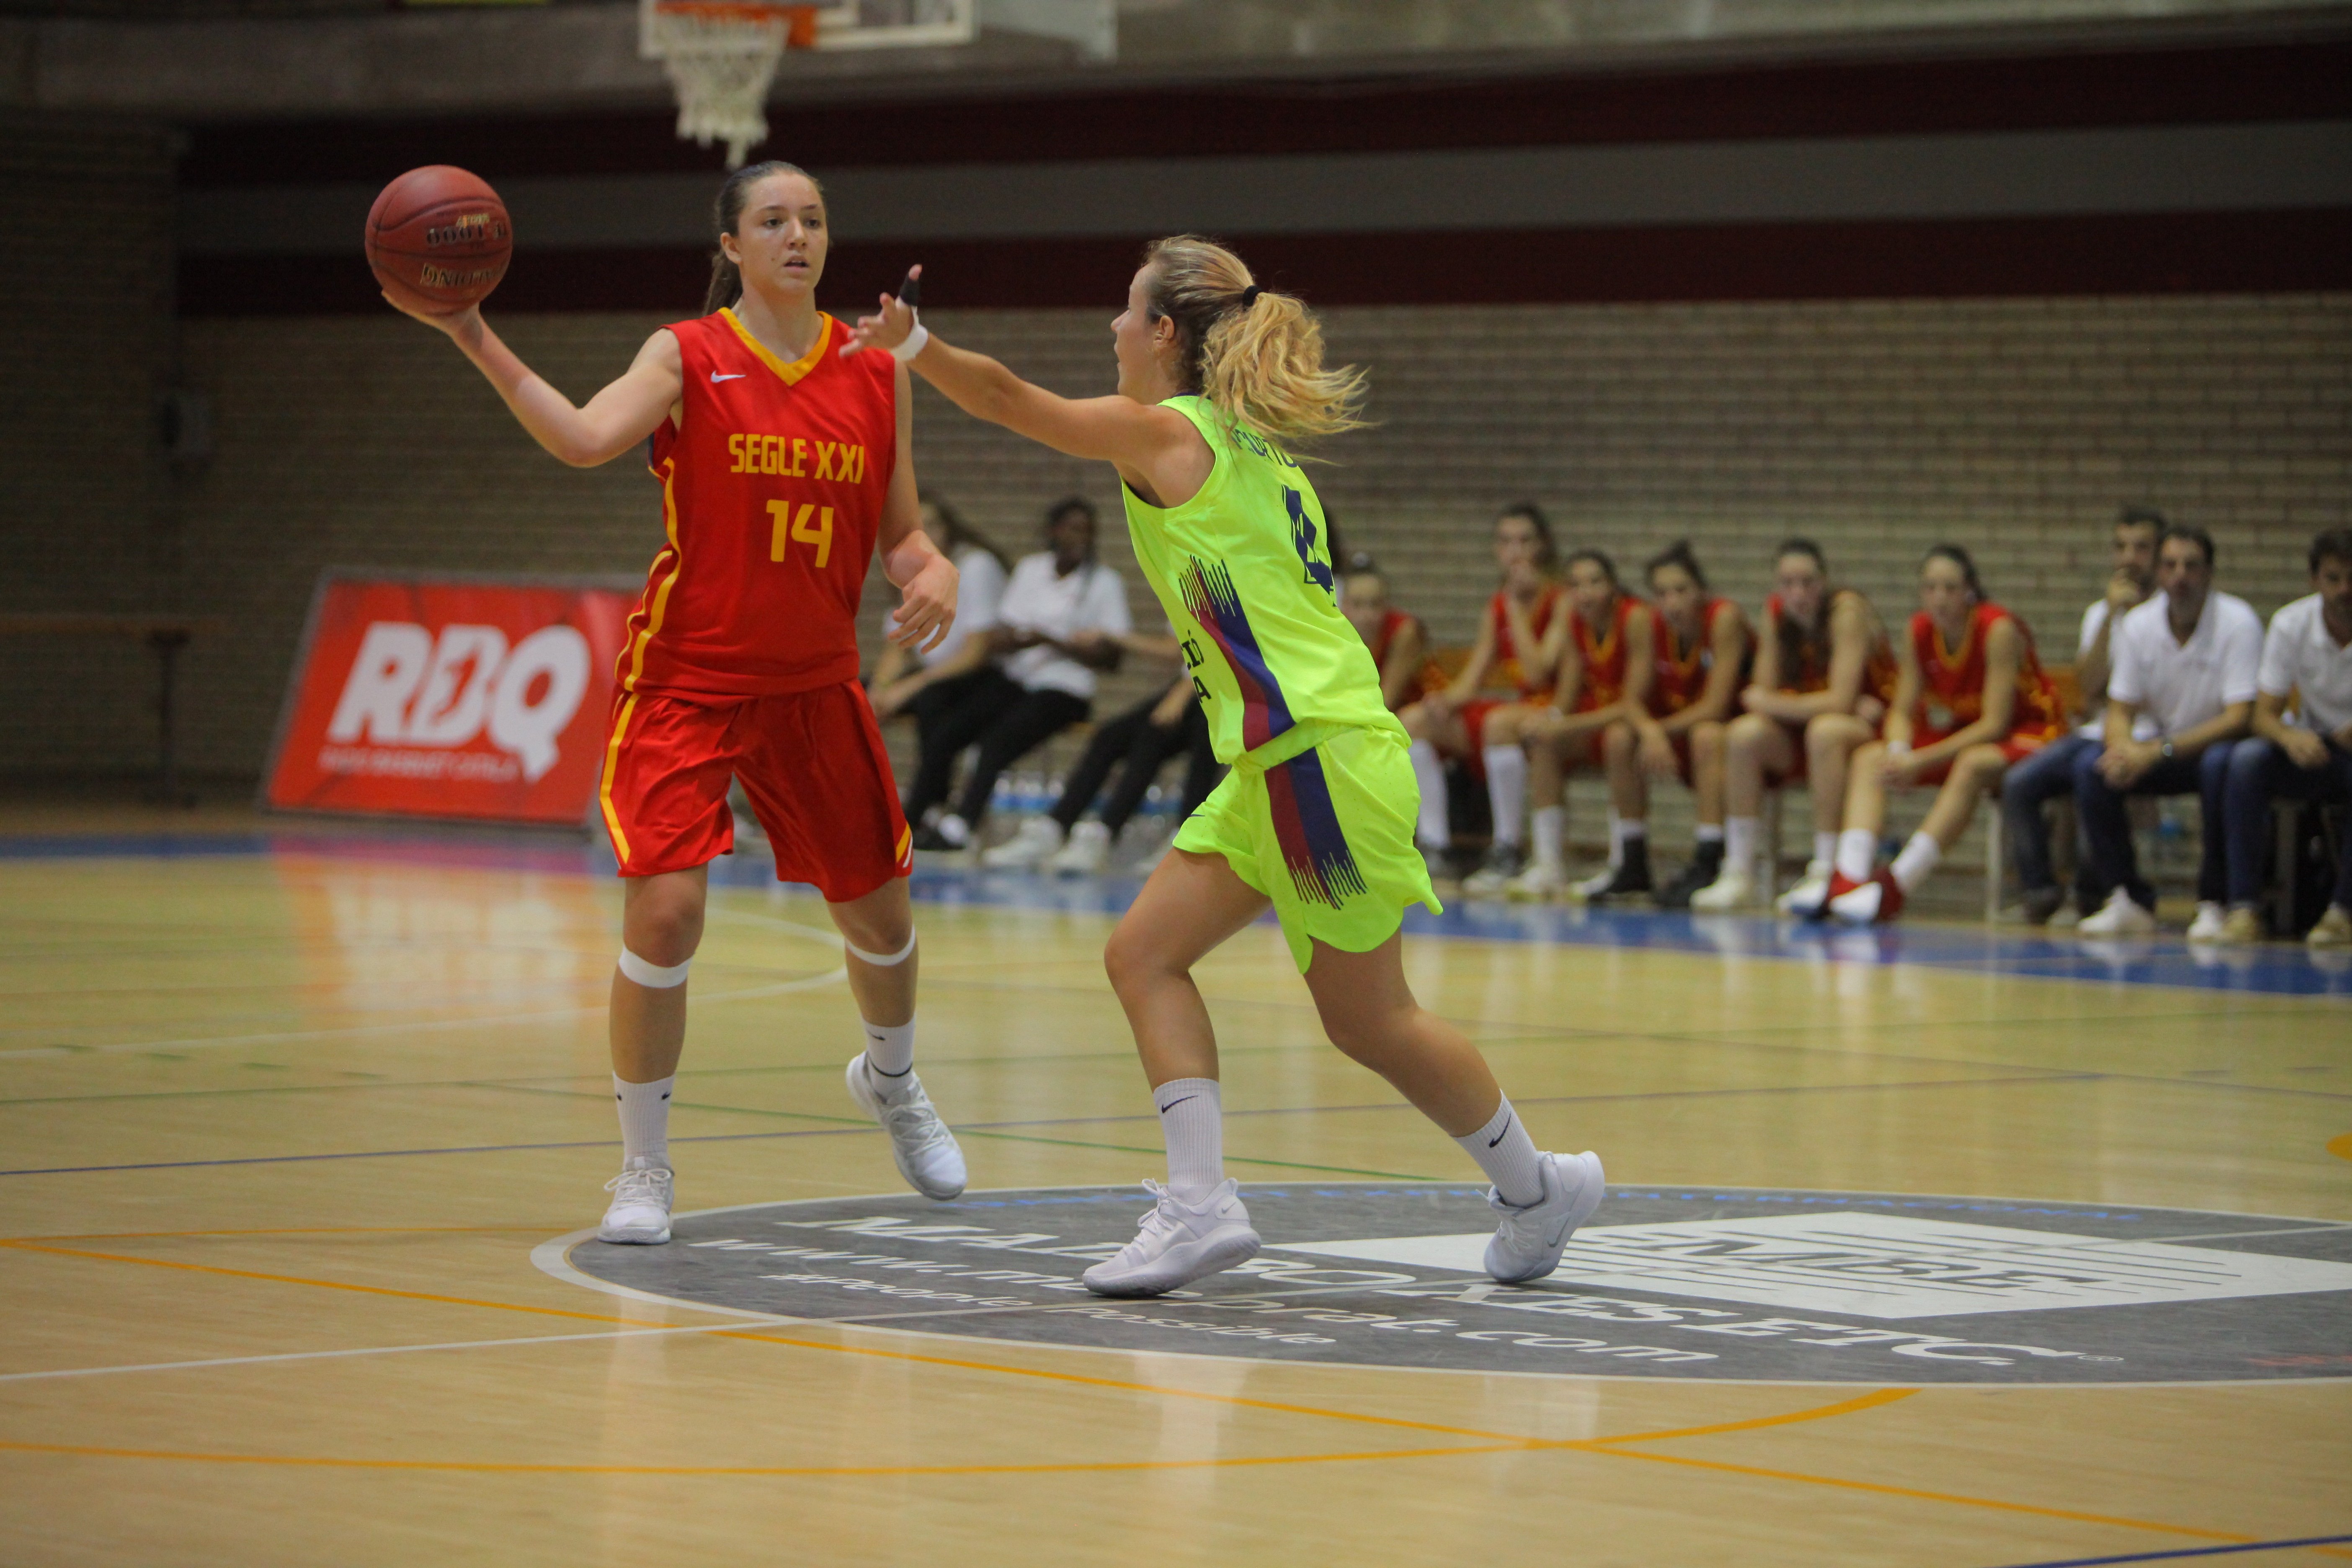 La Lliga Catalana femenina 2 de bàsquet la jugaran 6 equips que buscaran ser a la Final a 4